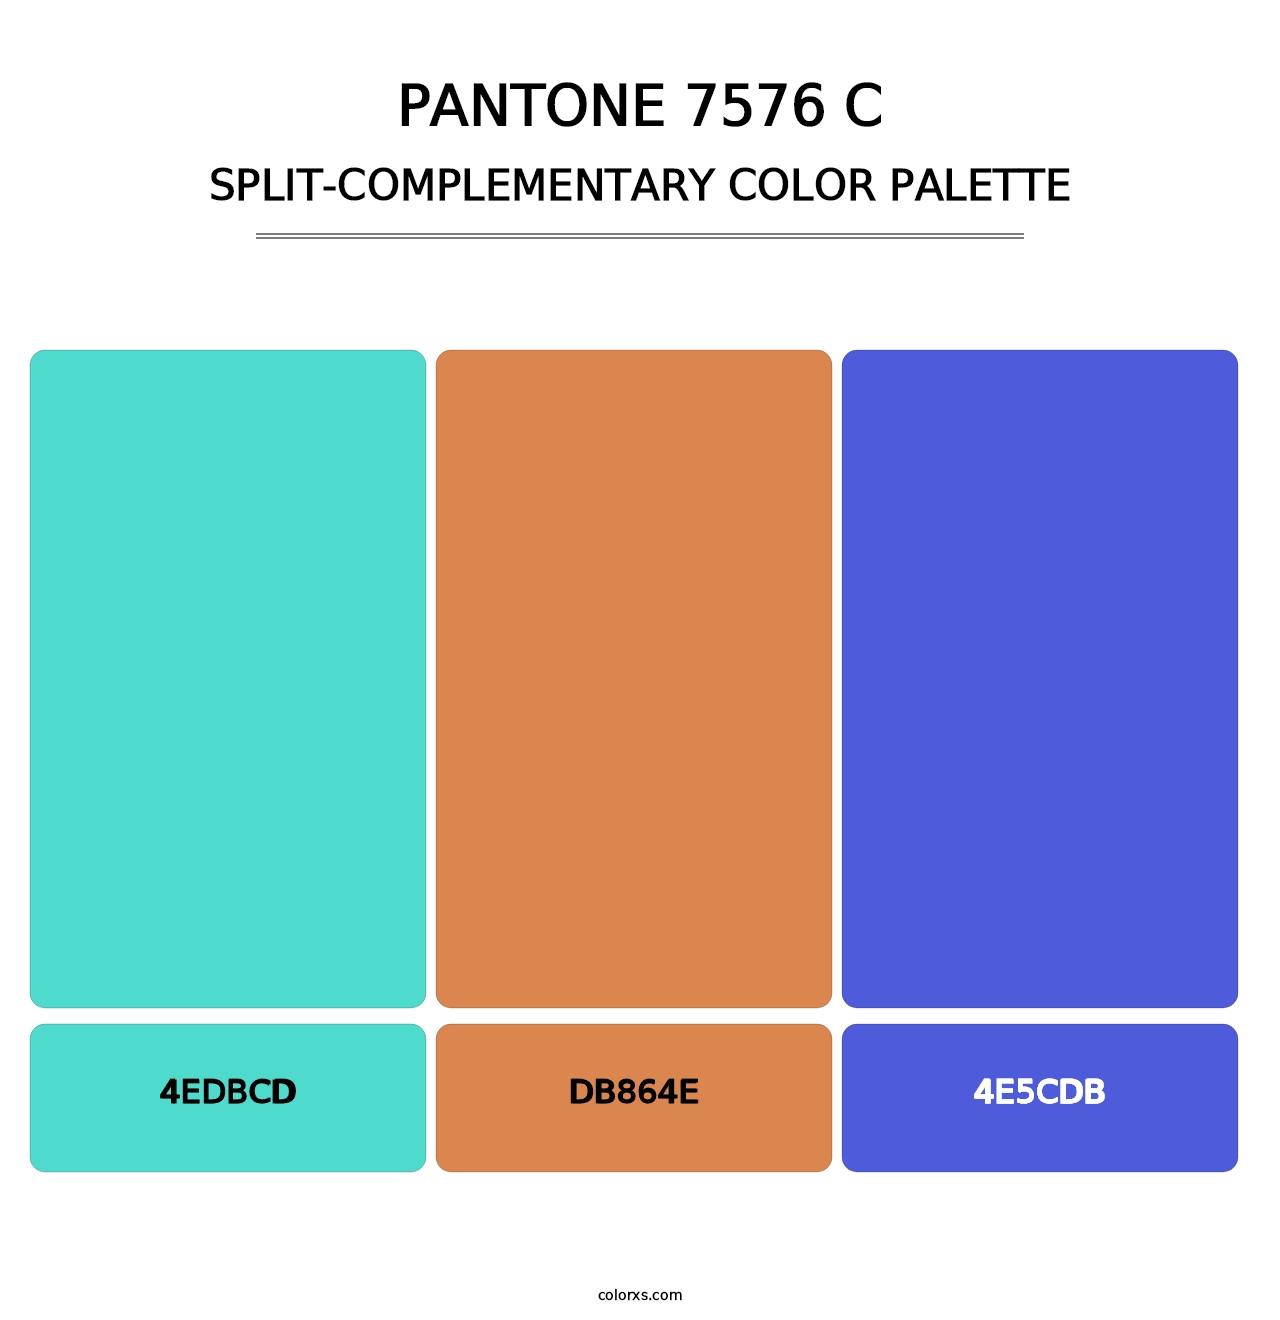 PANTONE 7576 C - Split-Complementary Color Palette